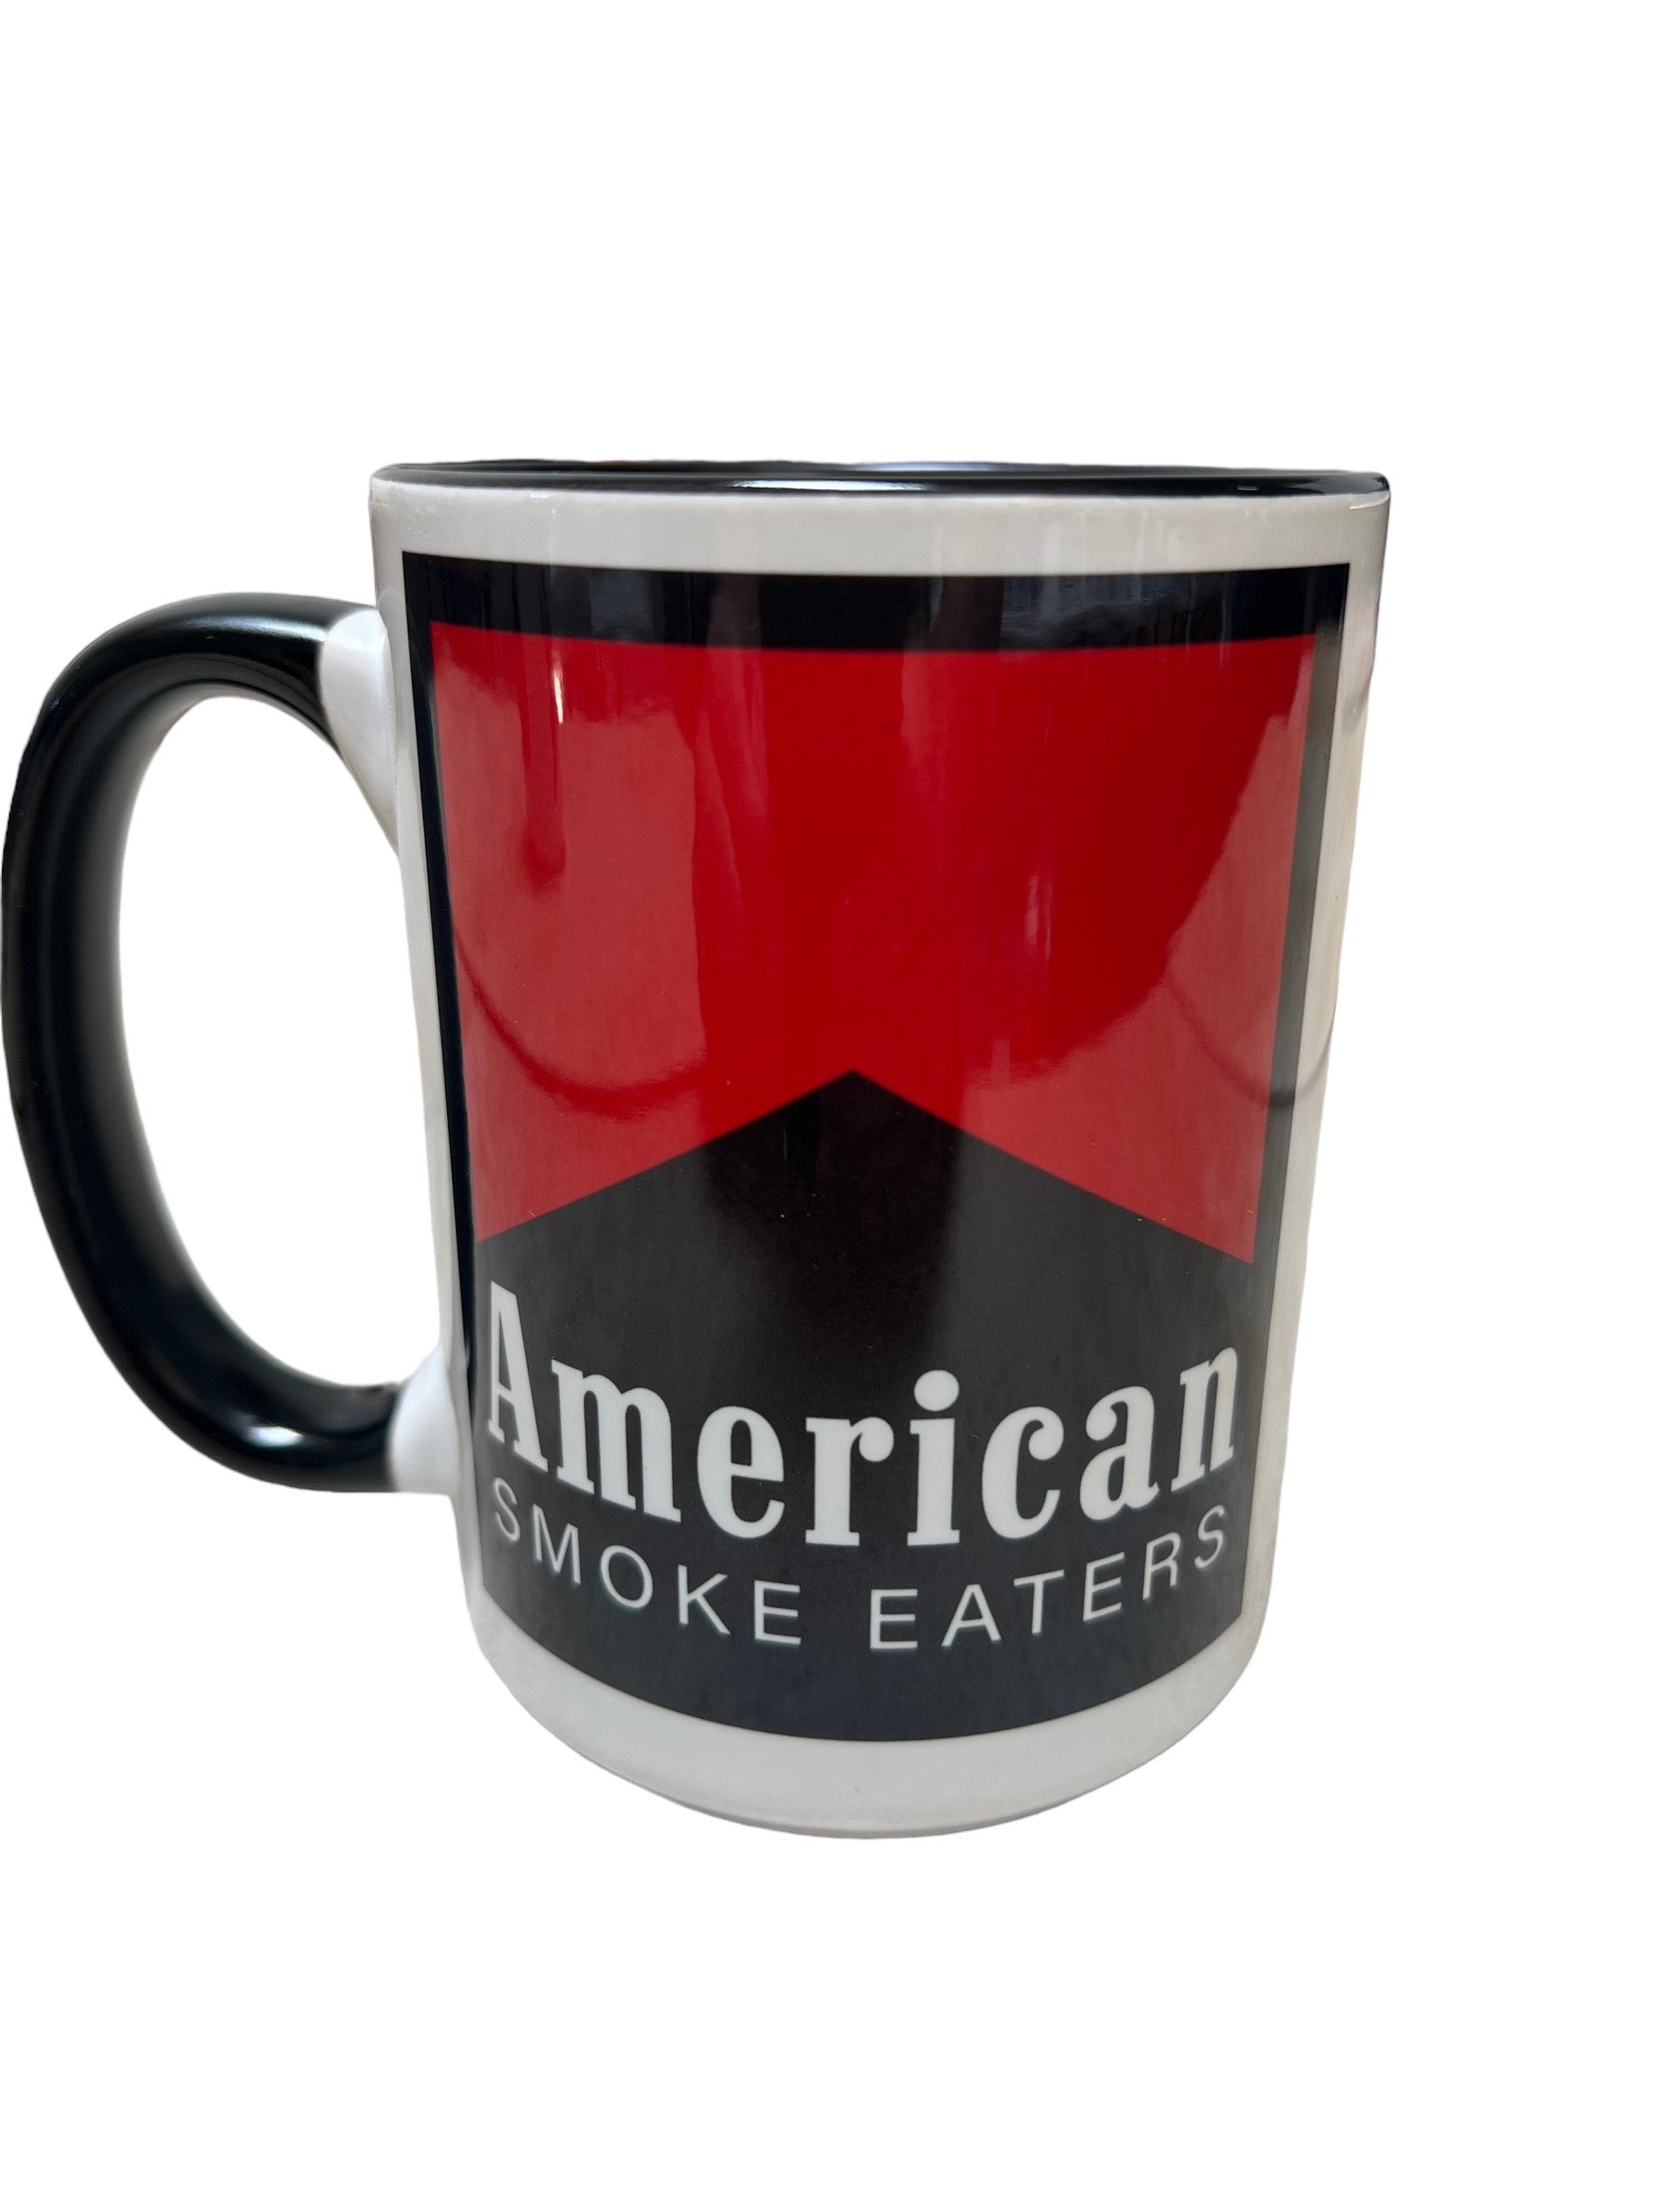 Smoke Eater Mug